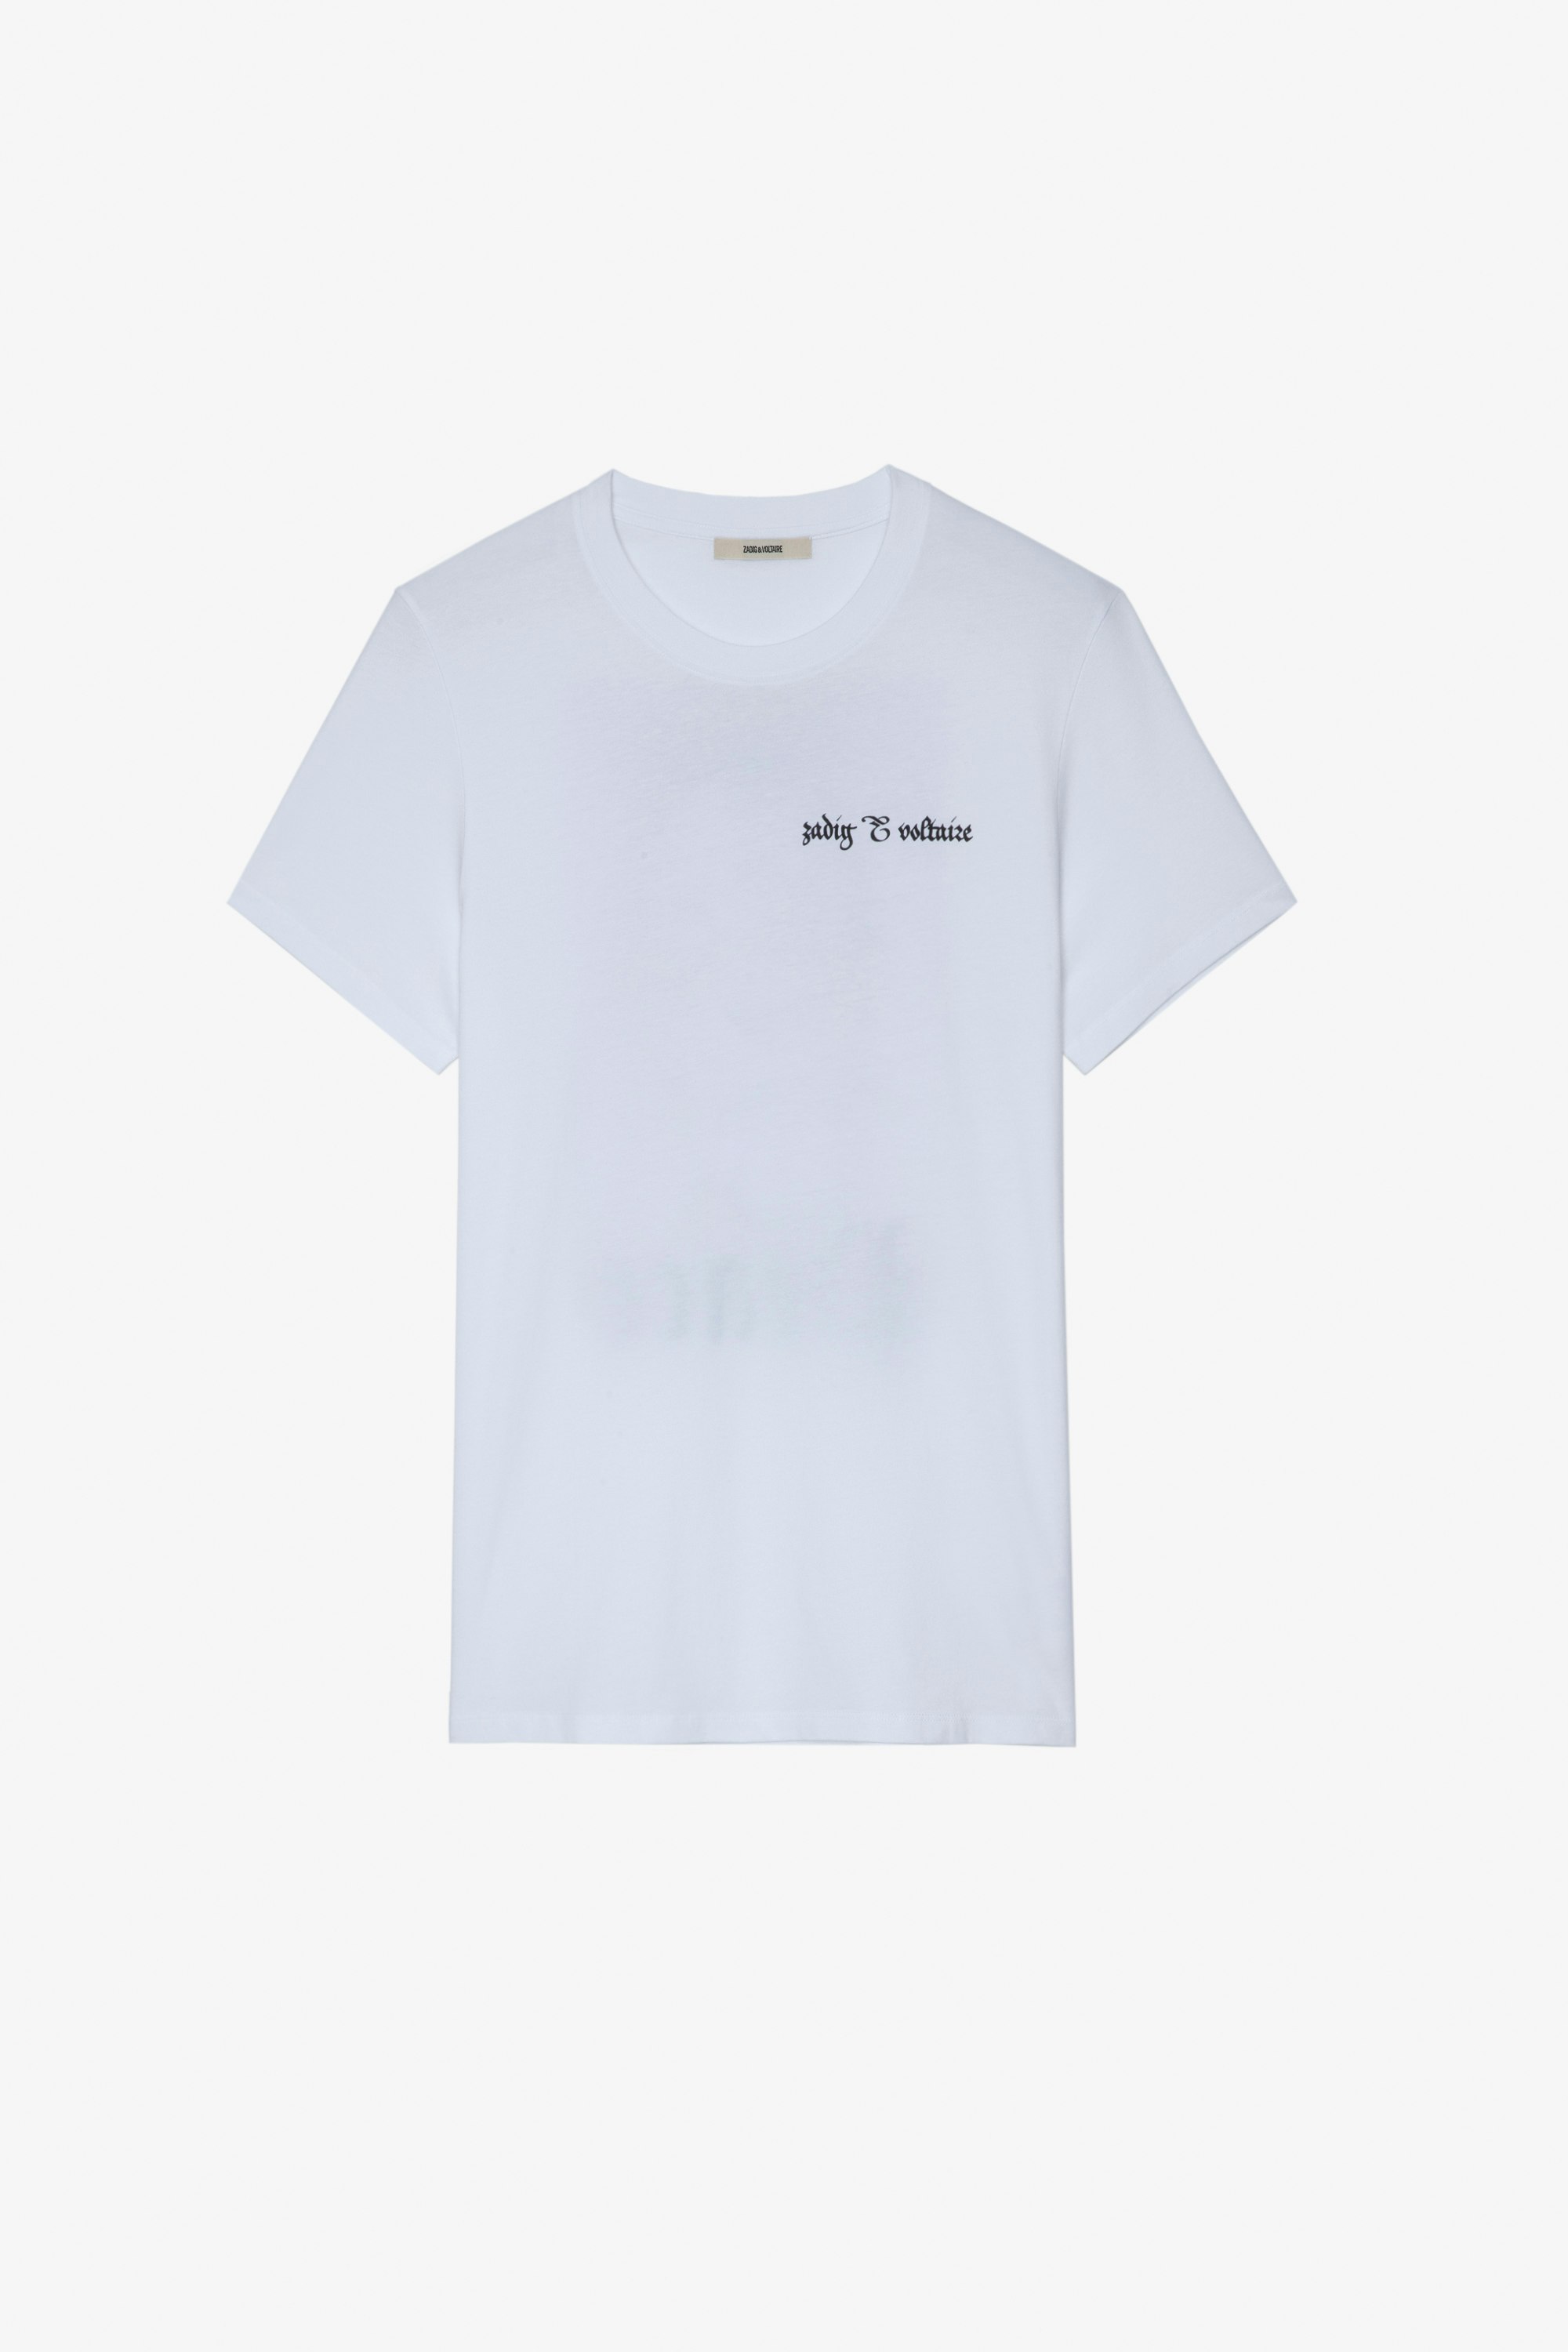 Ted T-Shirt ホワイトコットンTシャツ フロントにZVのシグネチャー、バックにライオンの 「Peace」フォトプリント メンズ